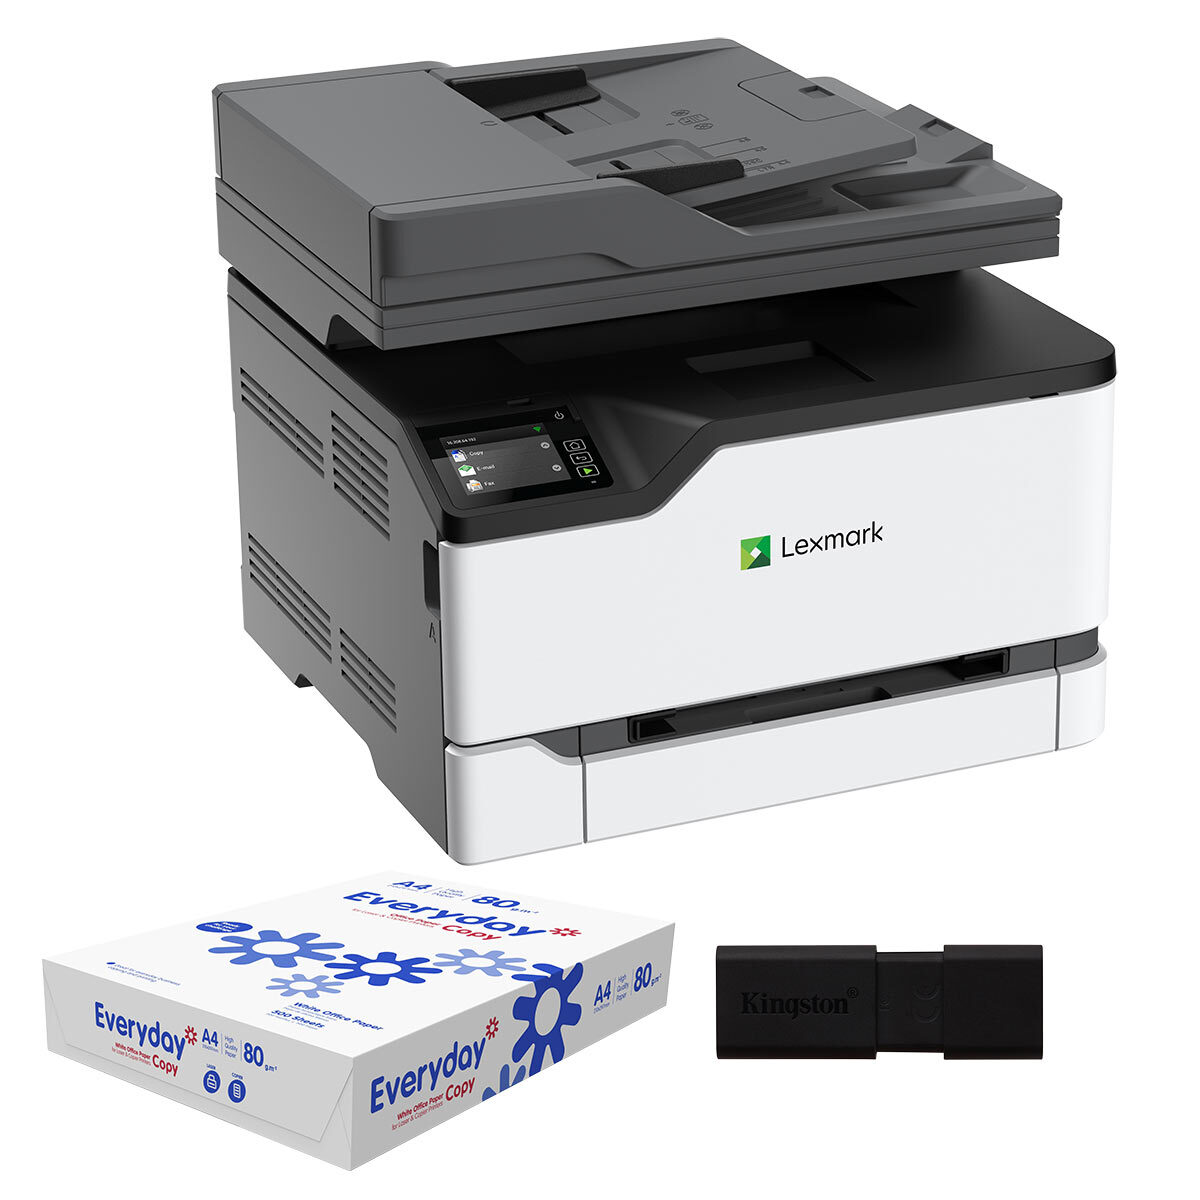 anydesk printer